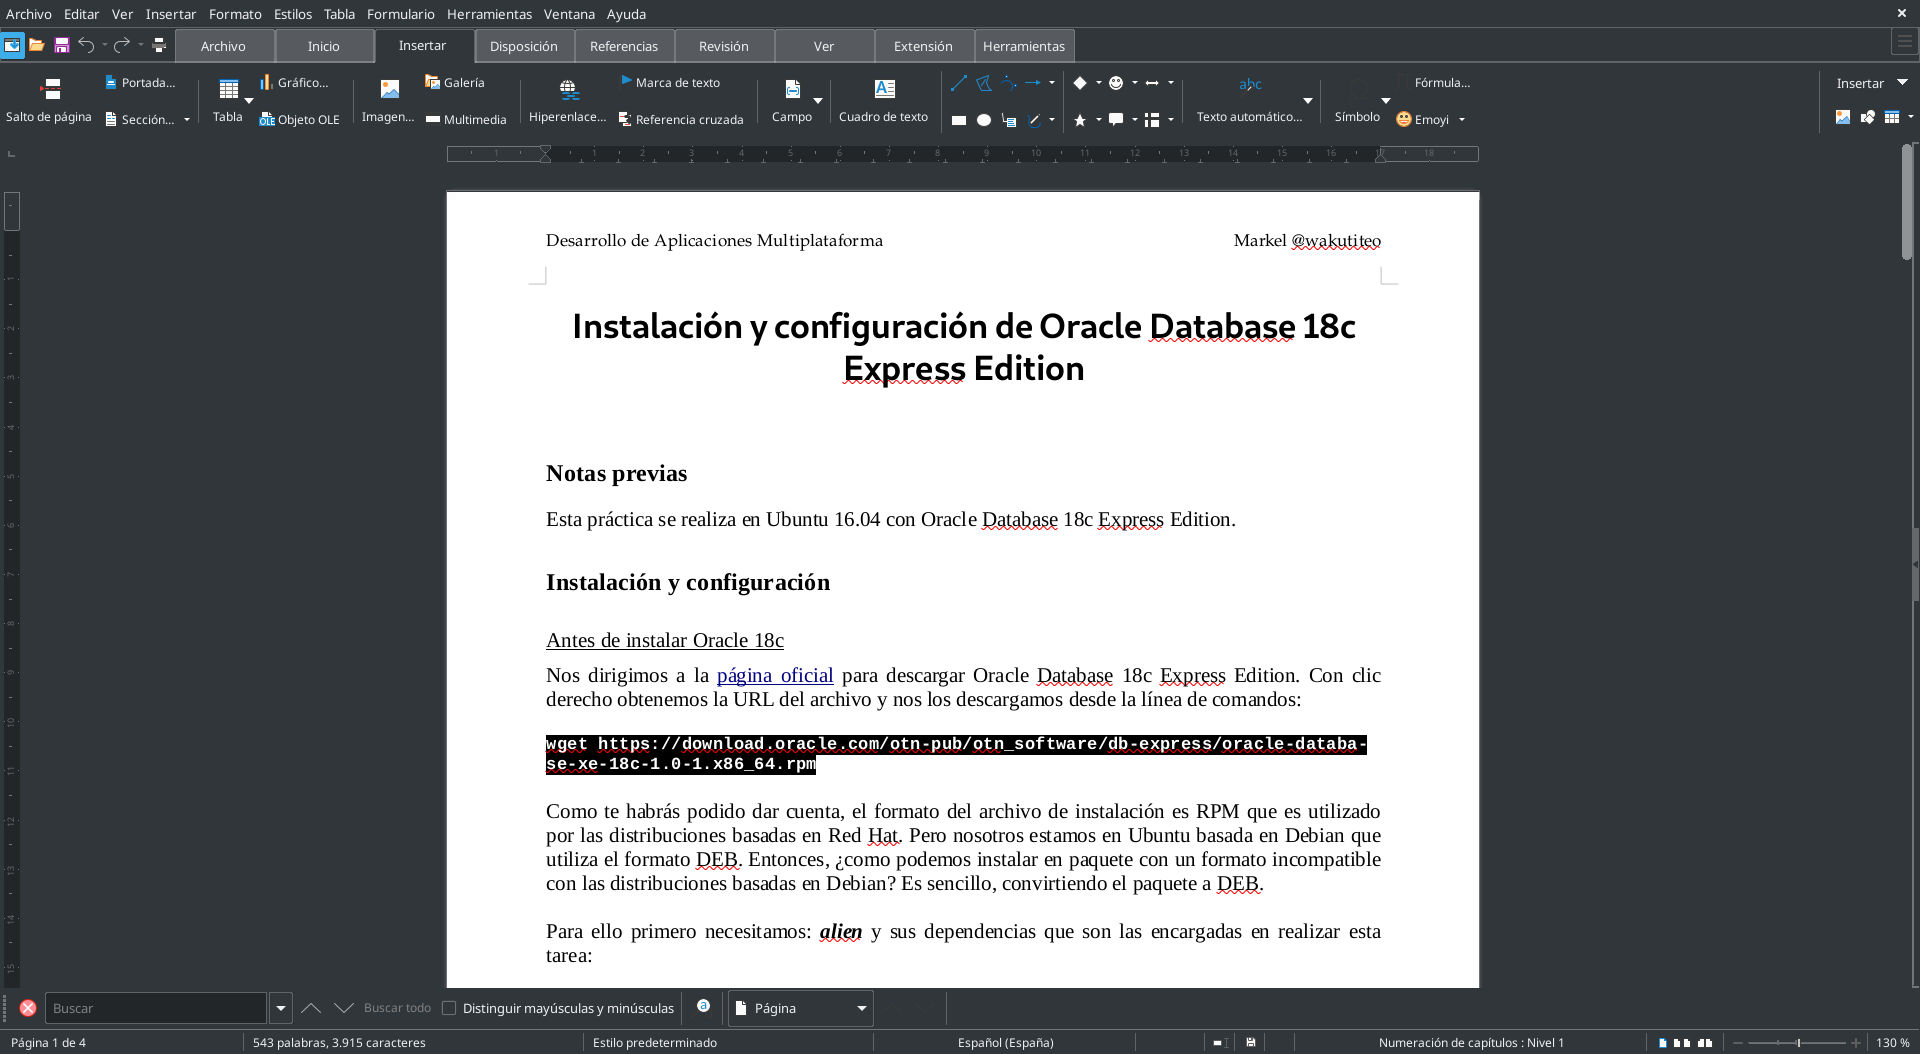 LibreOffice: Faltan datos de división de palabras